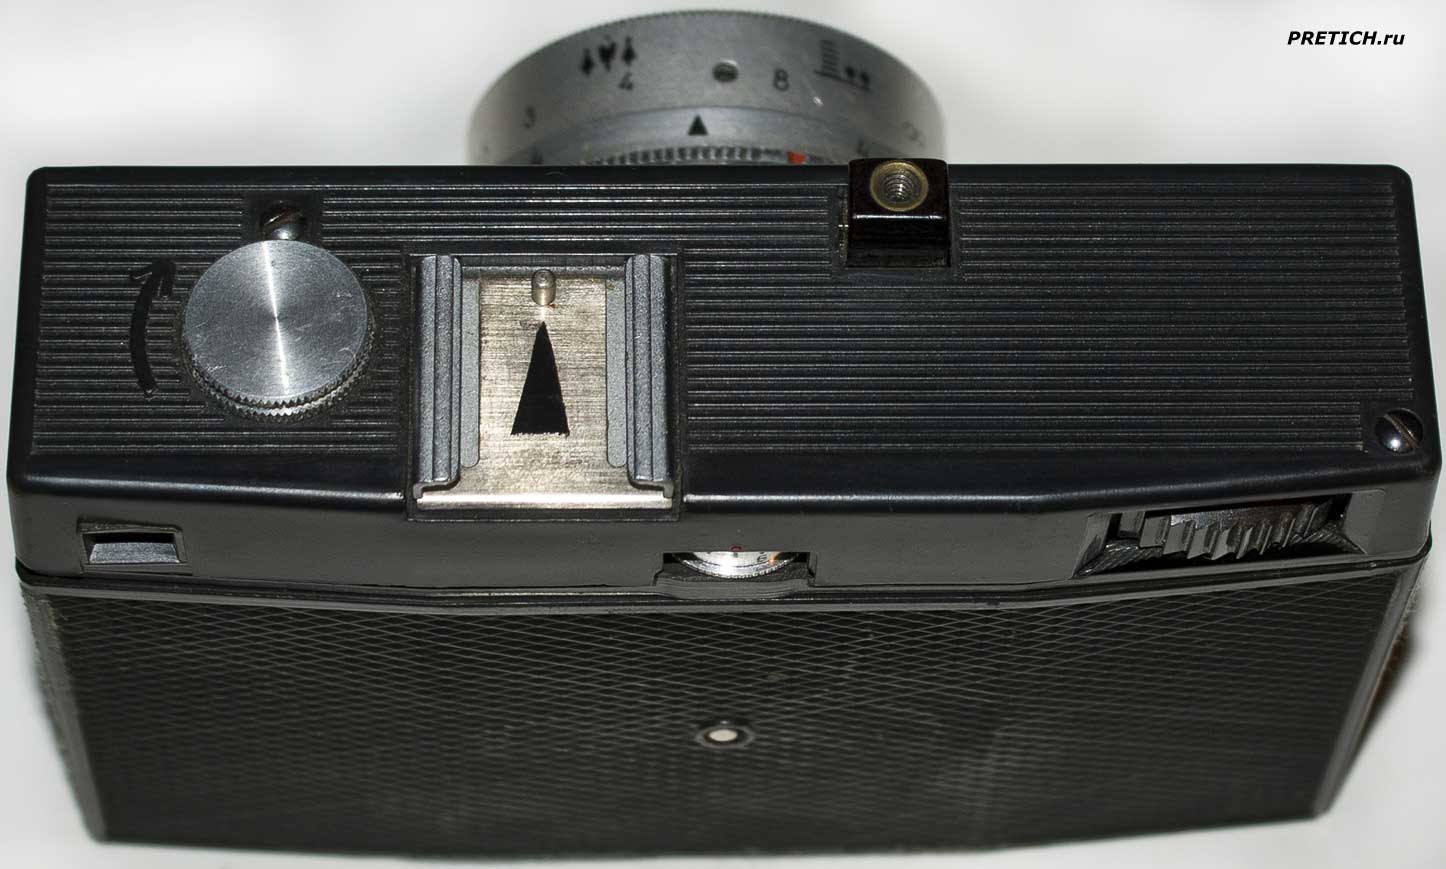 Смена-8М статья описывающая фотоаппарат, СССР